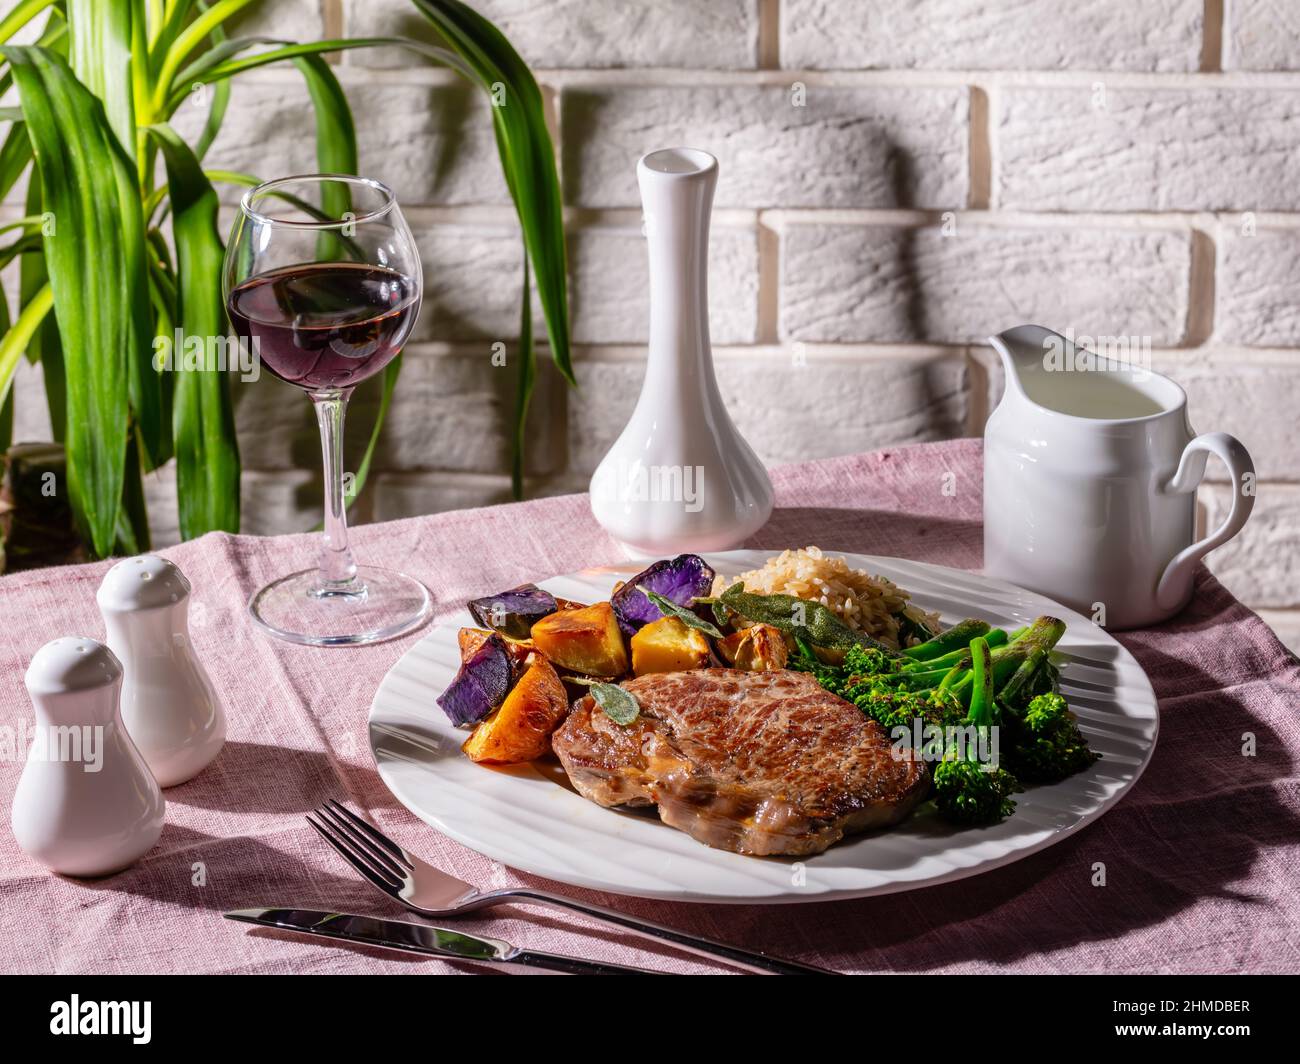 Bistecca di manzo con un bicchiere di vino rosso servito con broccolini, riso e patate arcobaleno al forno, primo piano Foto Stock